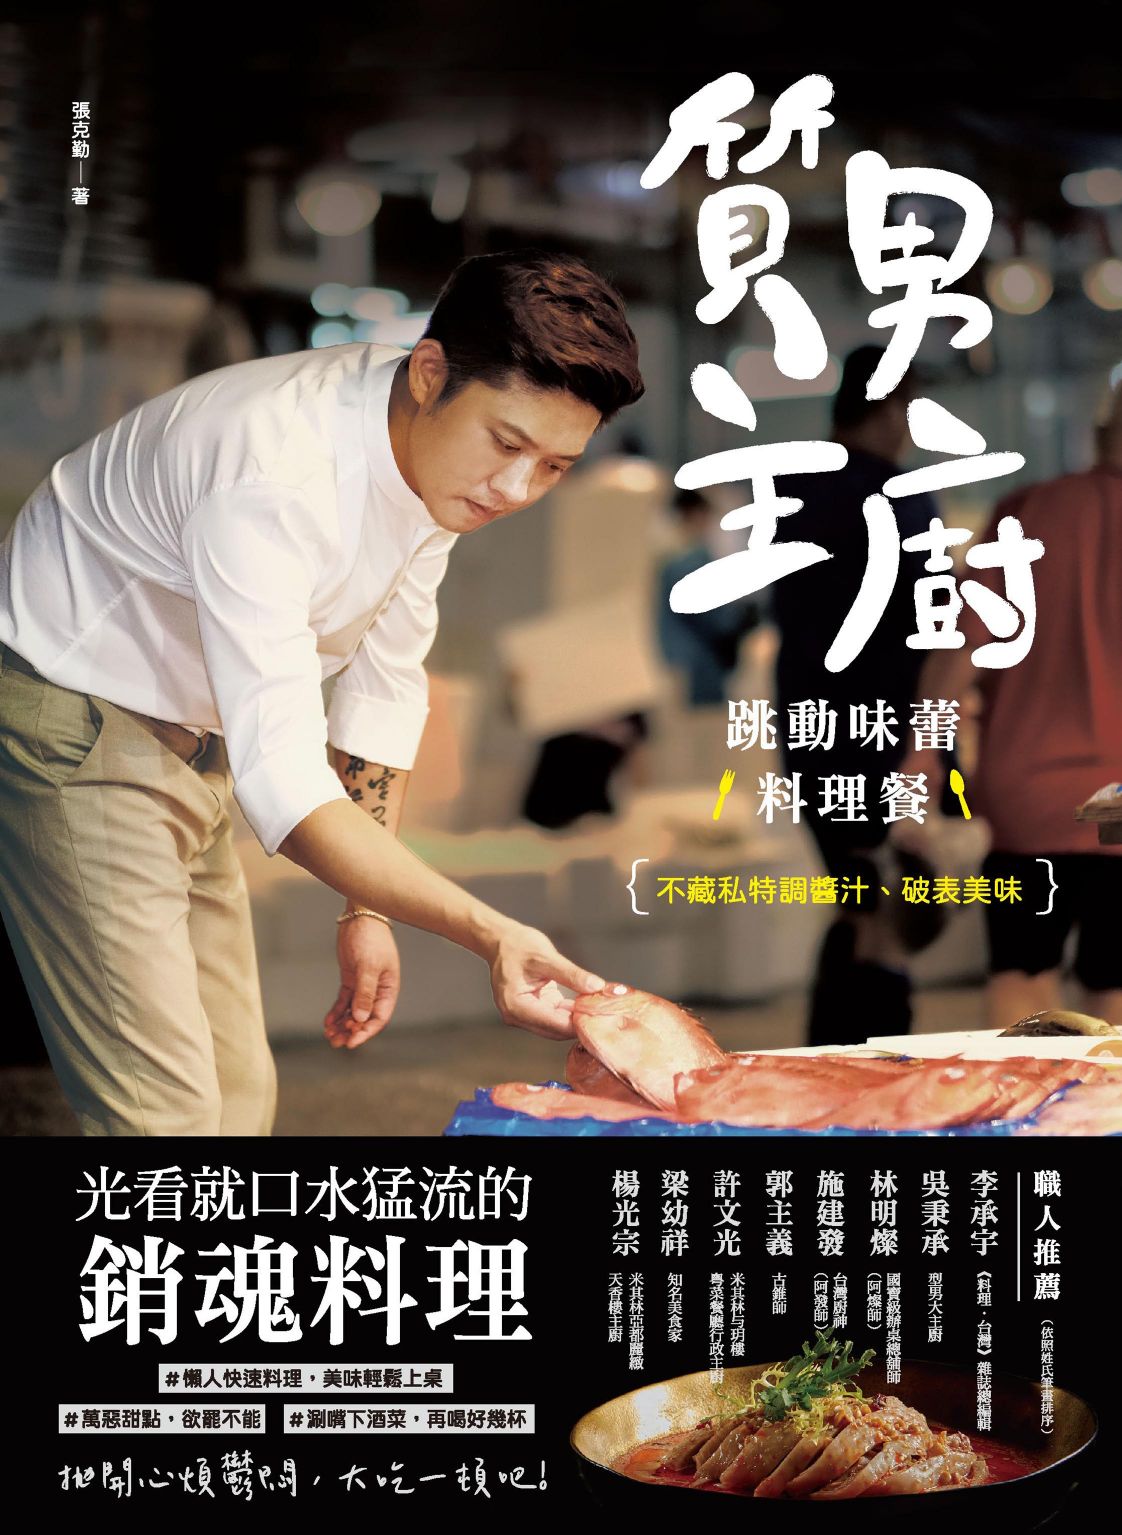 質男主廚 跳動味蕾料理餐 Bookwalker中文電子書